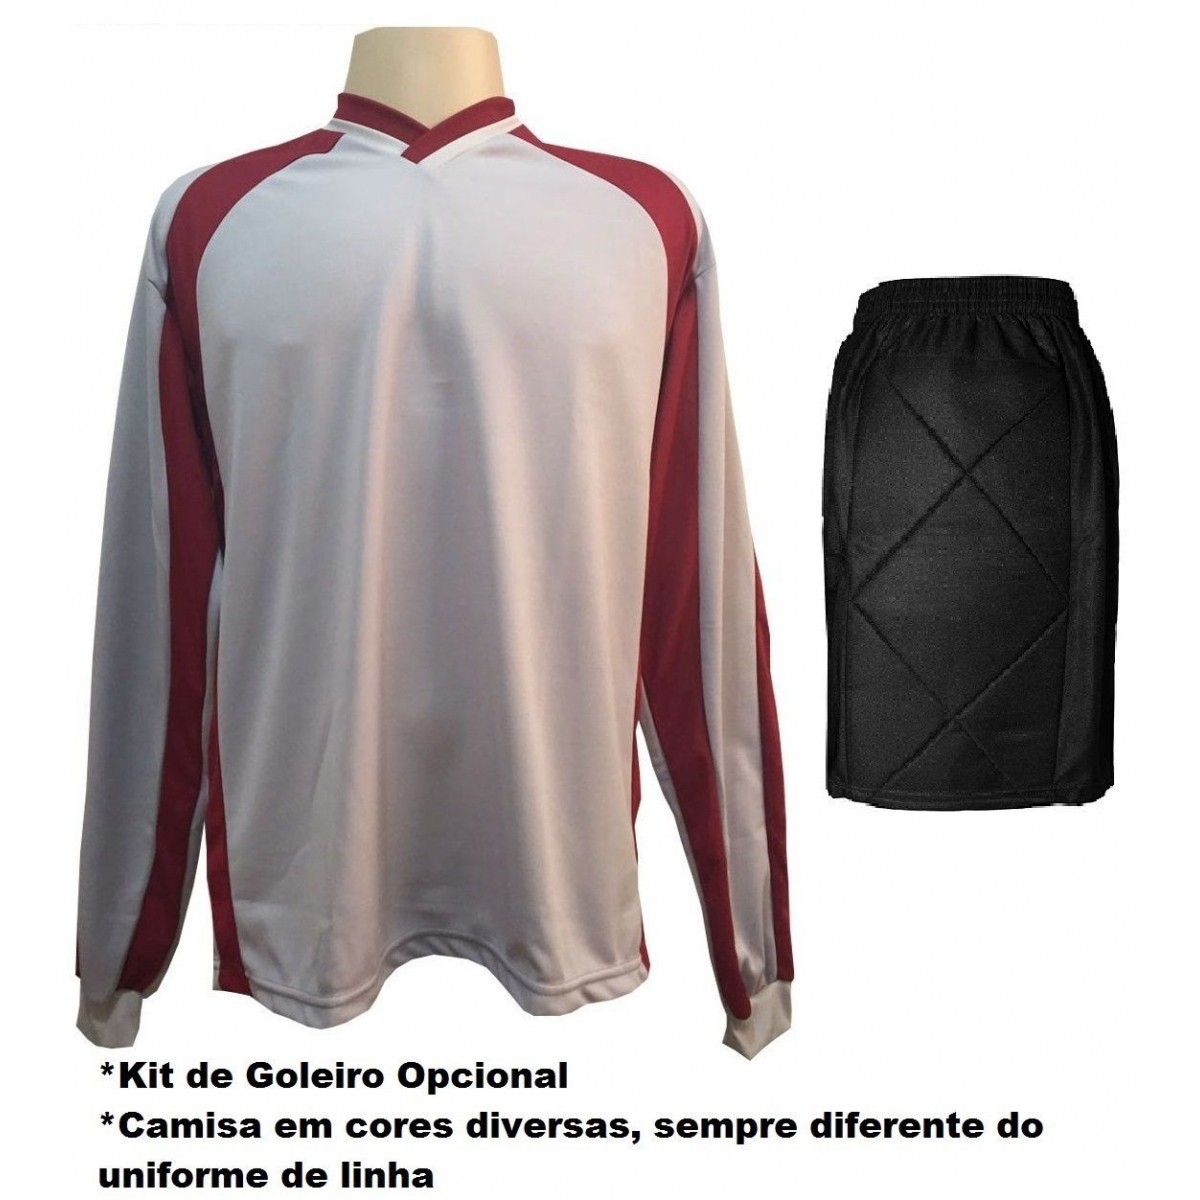 Uniforme Esportivo com 12 camisas modelo City Vermelho/Branco + 12 calções modelo Copa + 1 Goleiro + Brindes